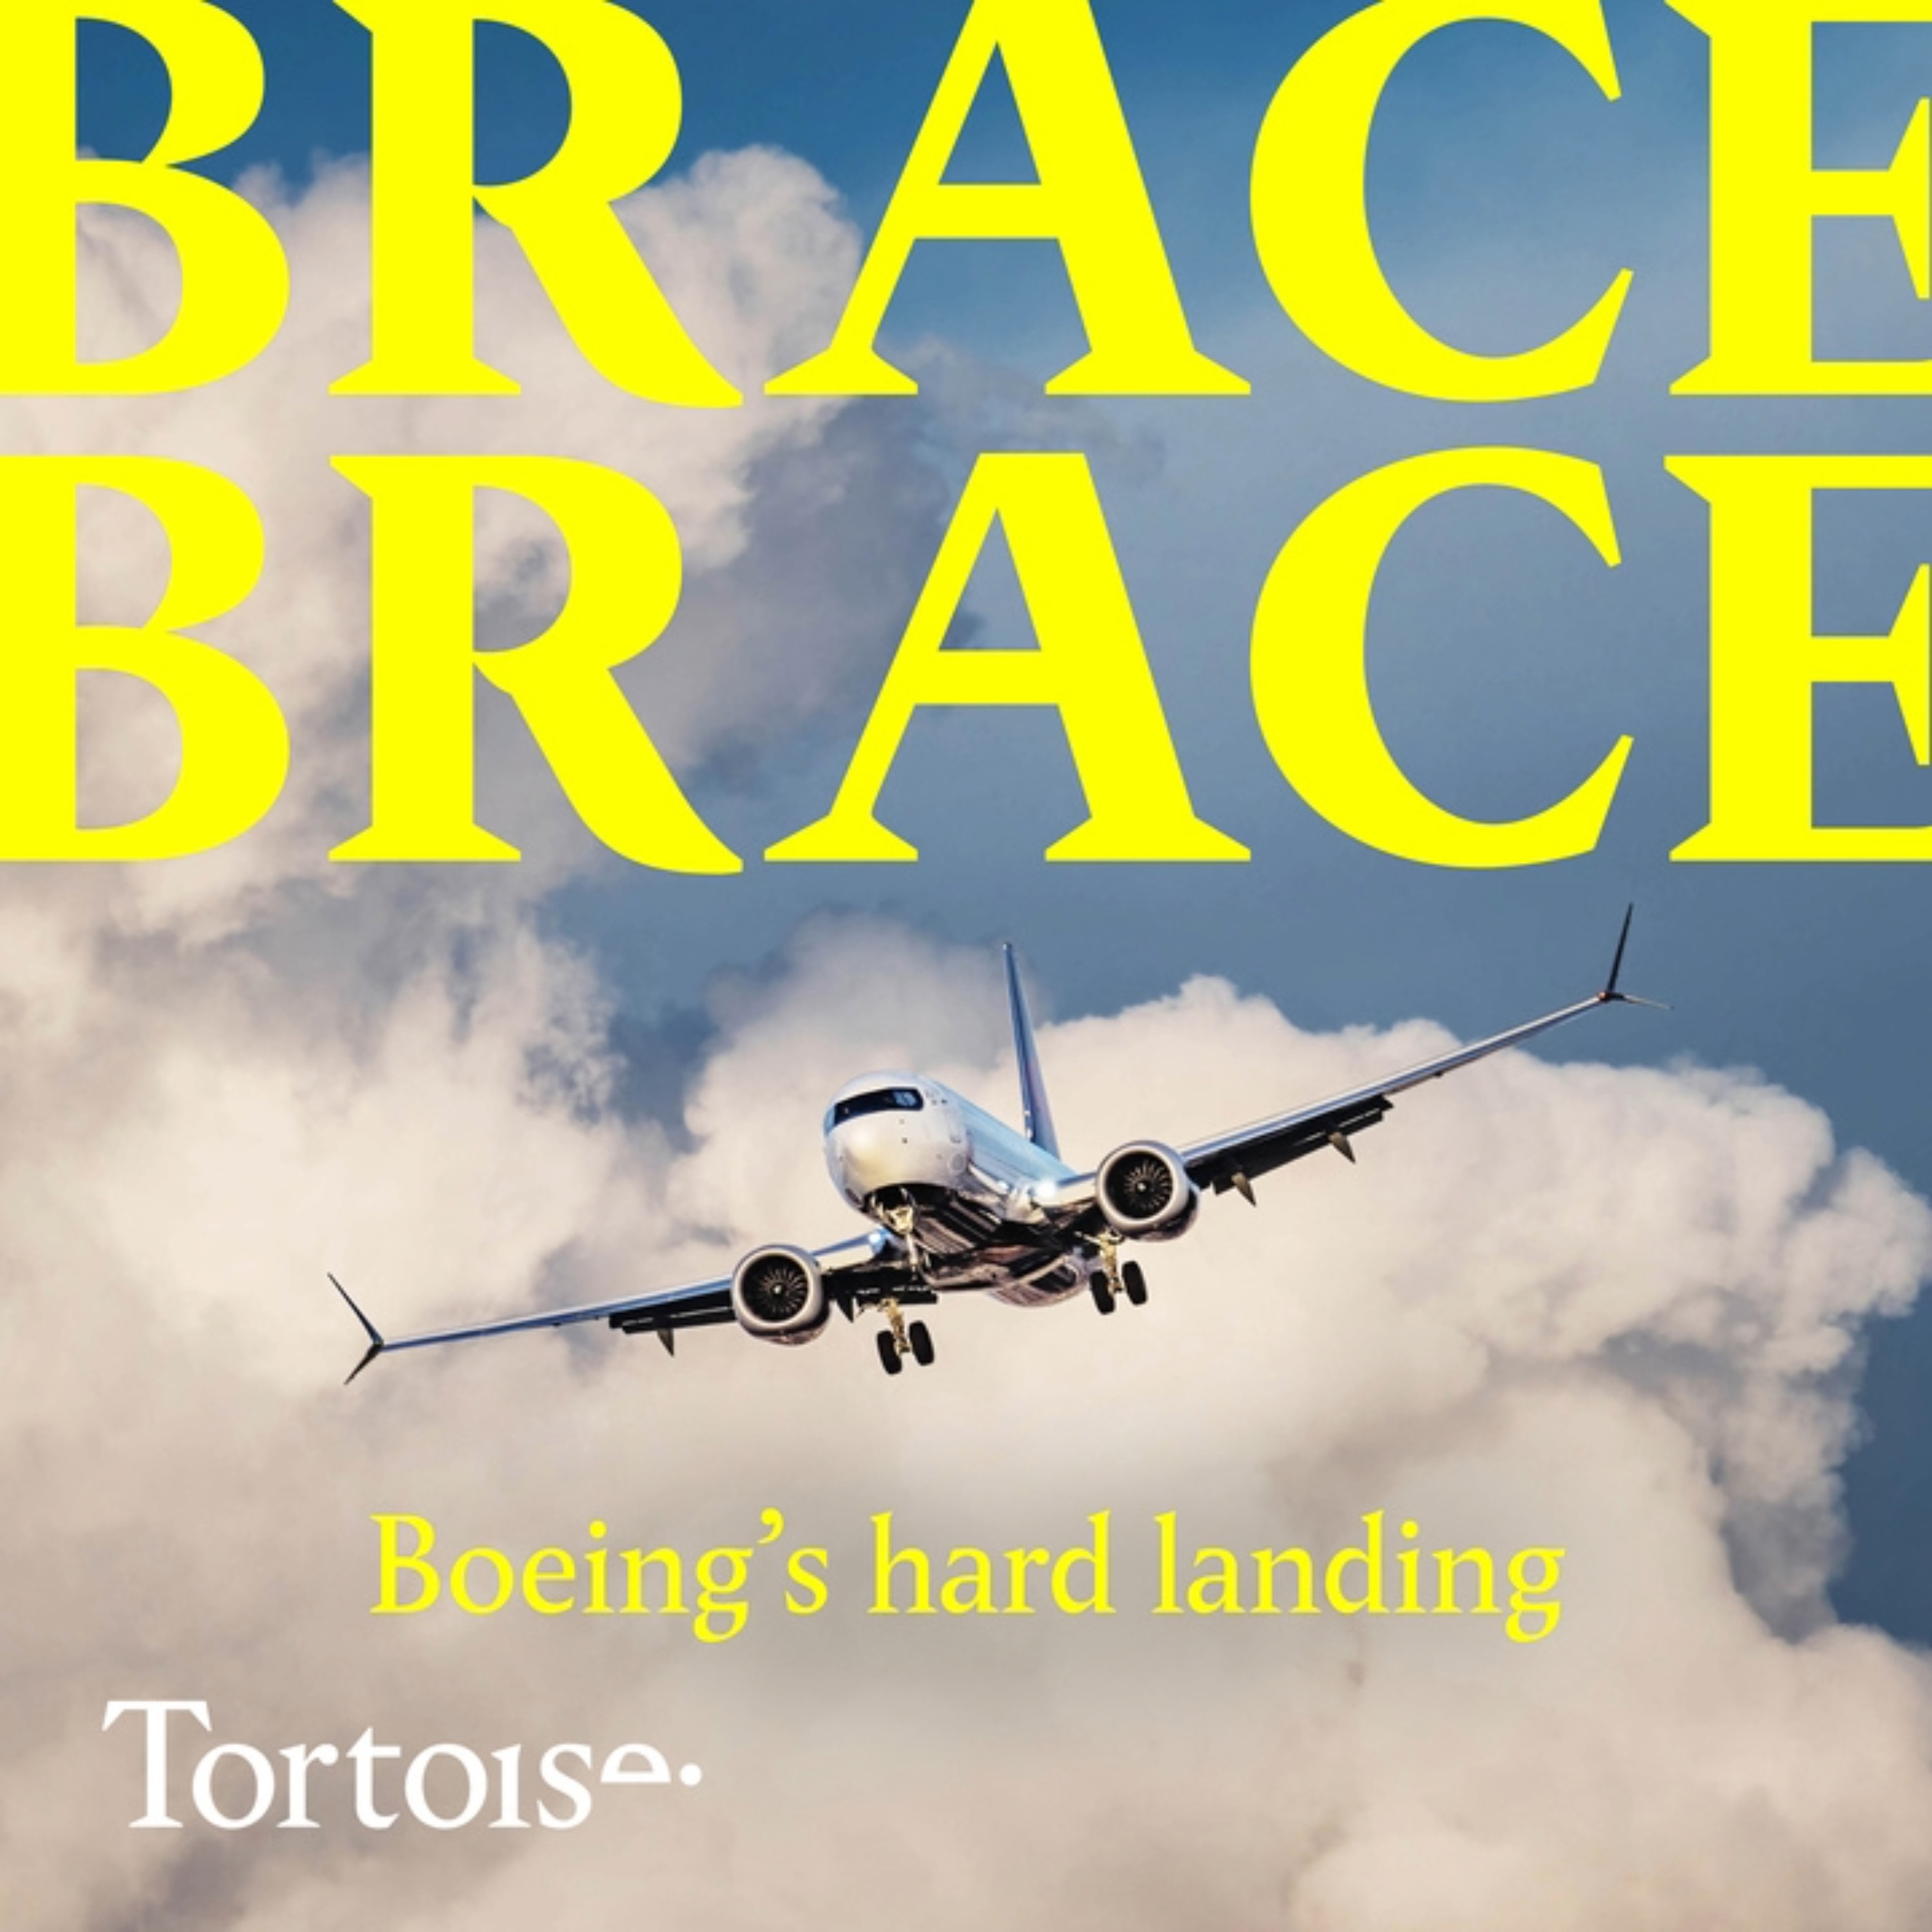 Brace, brace: Boeing’s hard landing